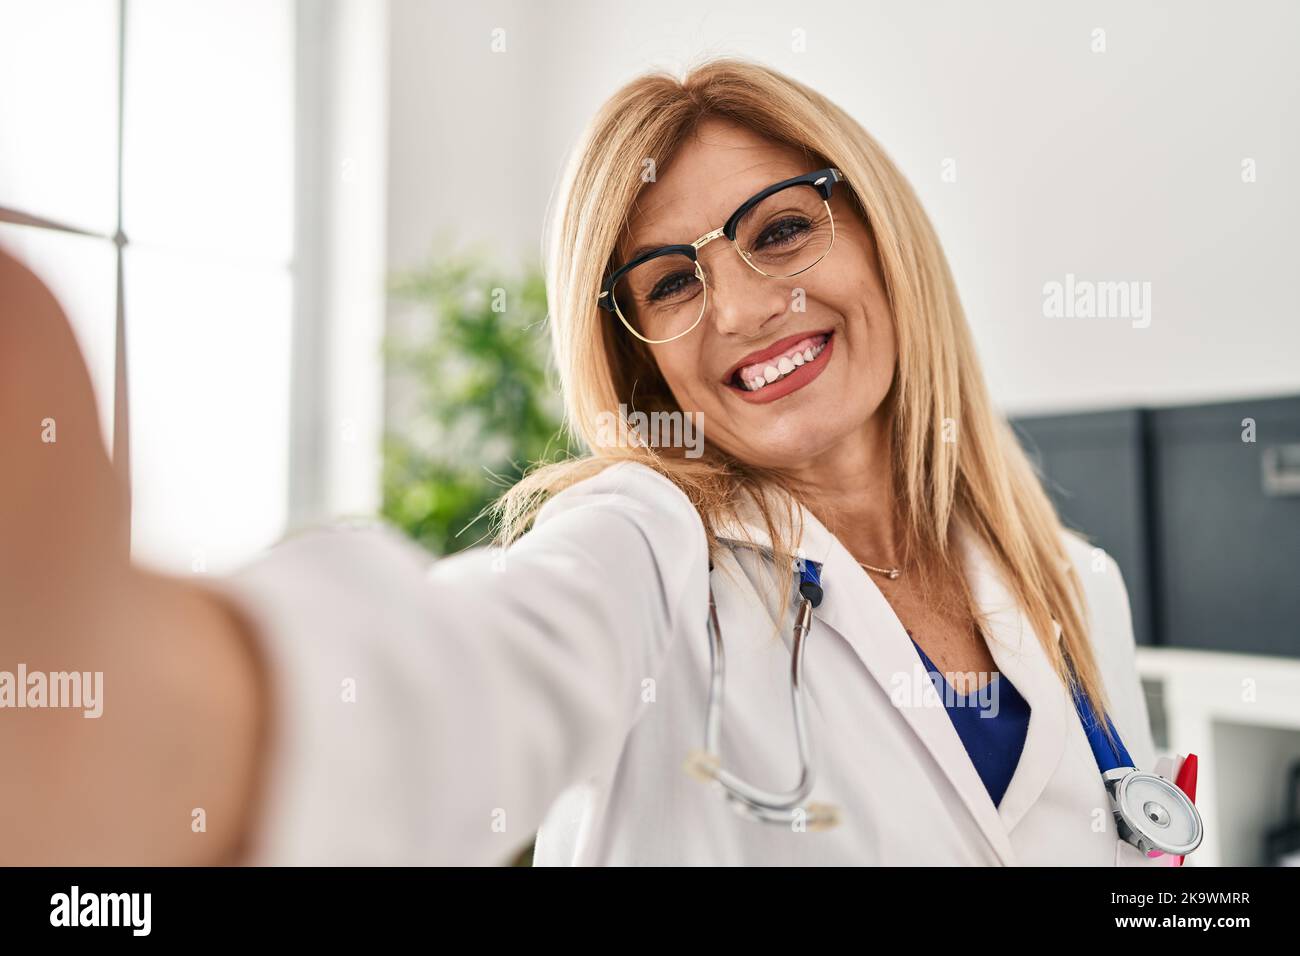 Blonde Frau mittleren Alters in Arztuniform machen Selfie bei der Kamera in der Klinik Stockfoto